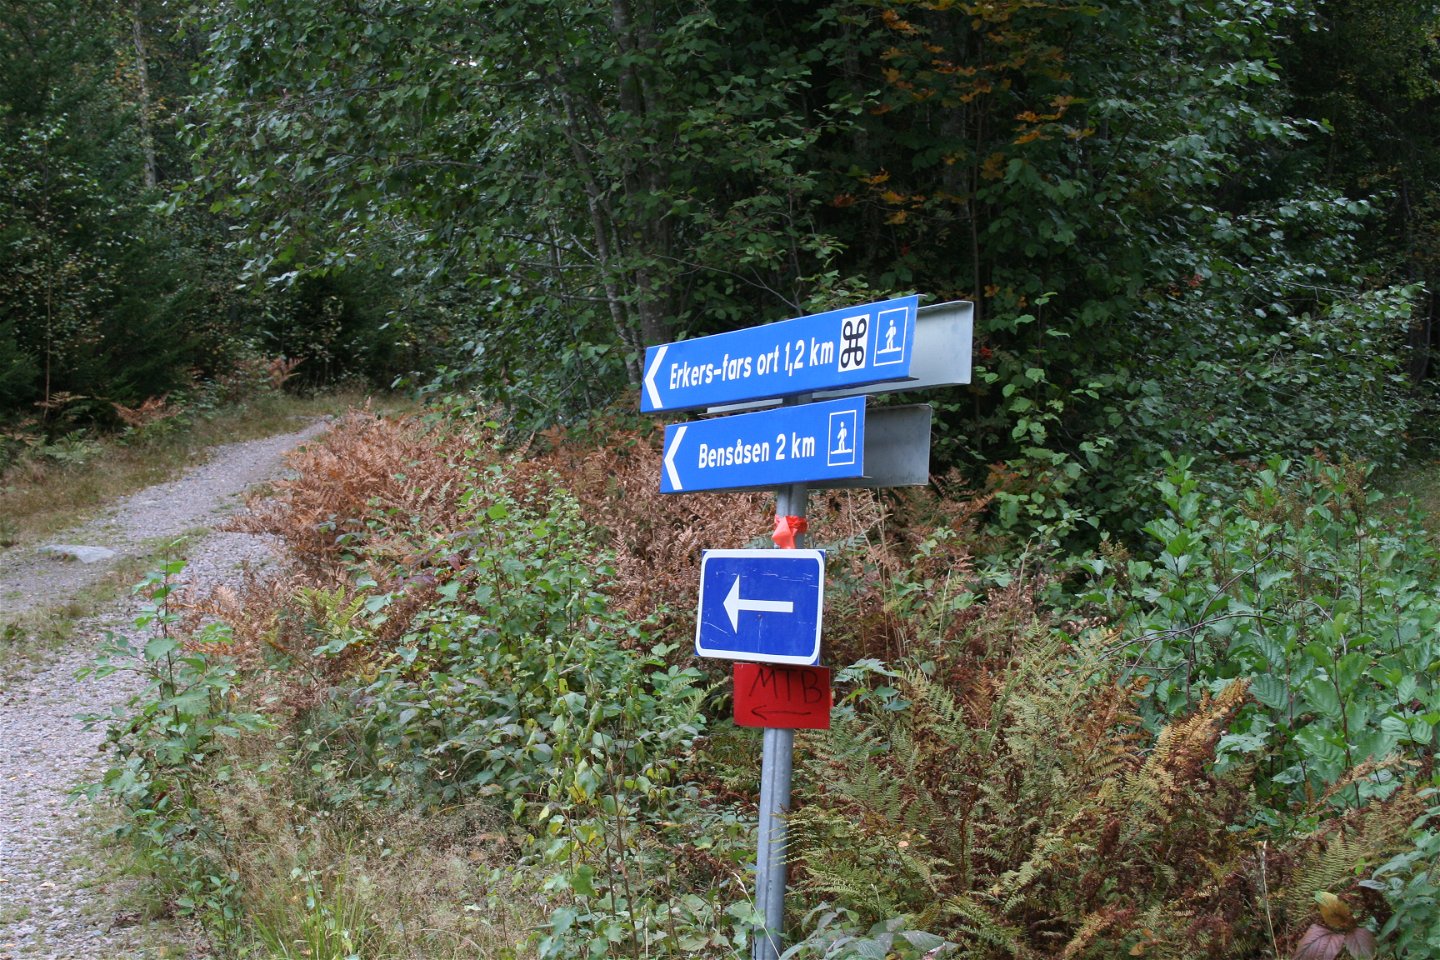 Skylt som visar MTB-slingans markeringar och skyltar som visar vandringslederna till Bensåsen och Erkers-Fars Ort